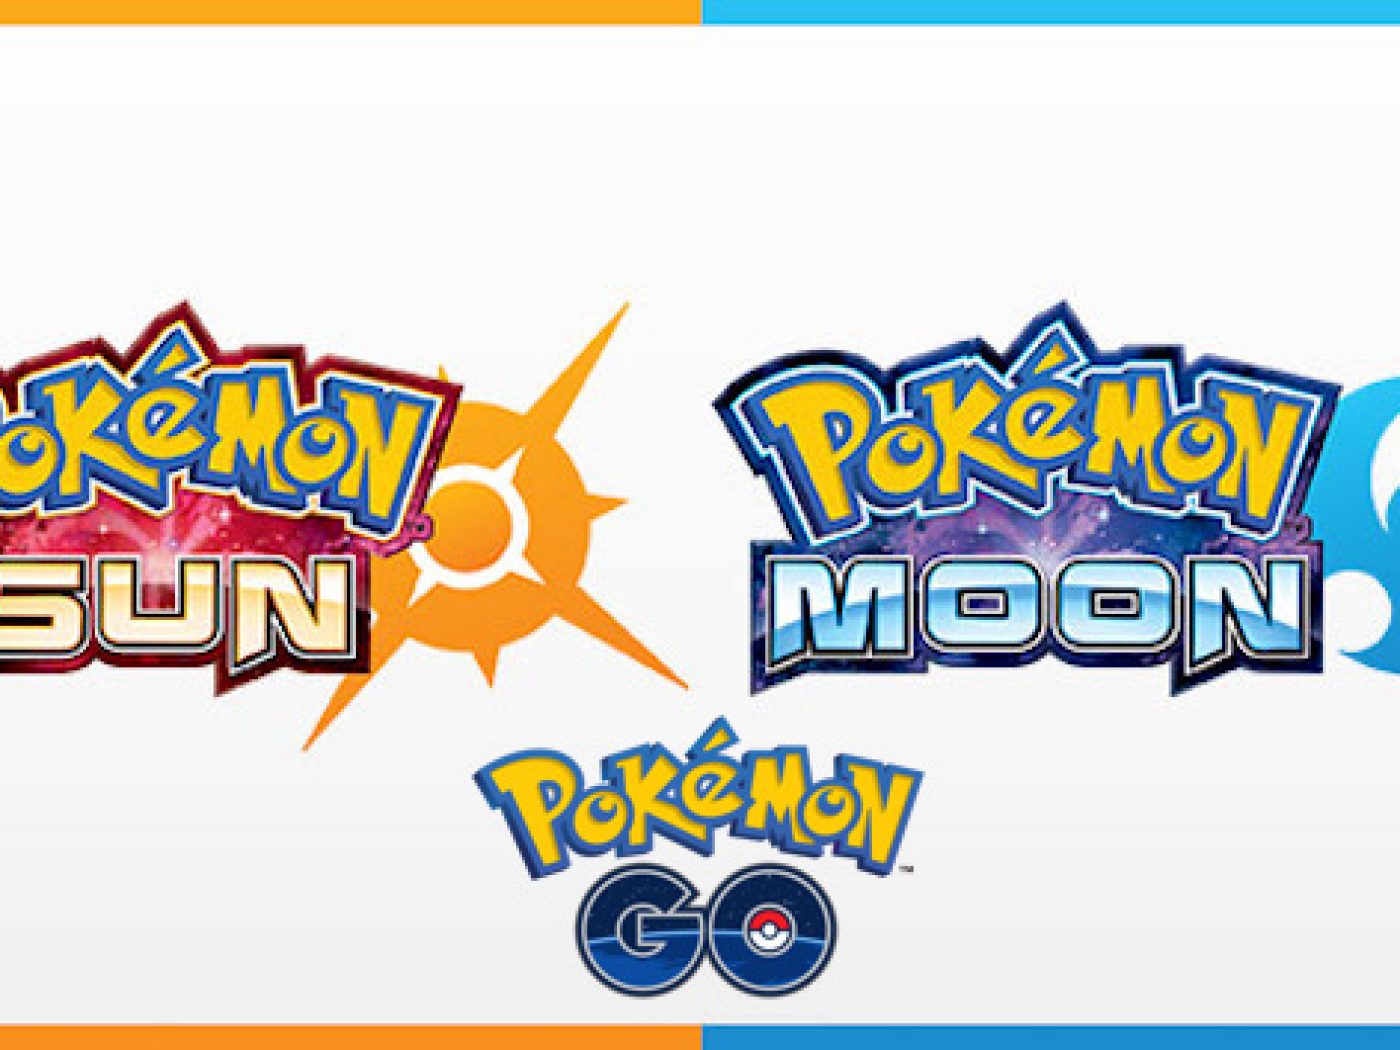 Pokémon Sun/Moon (2016)